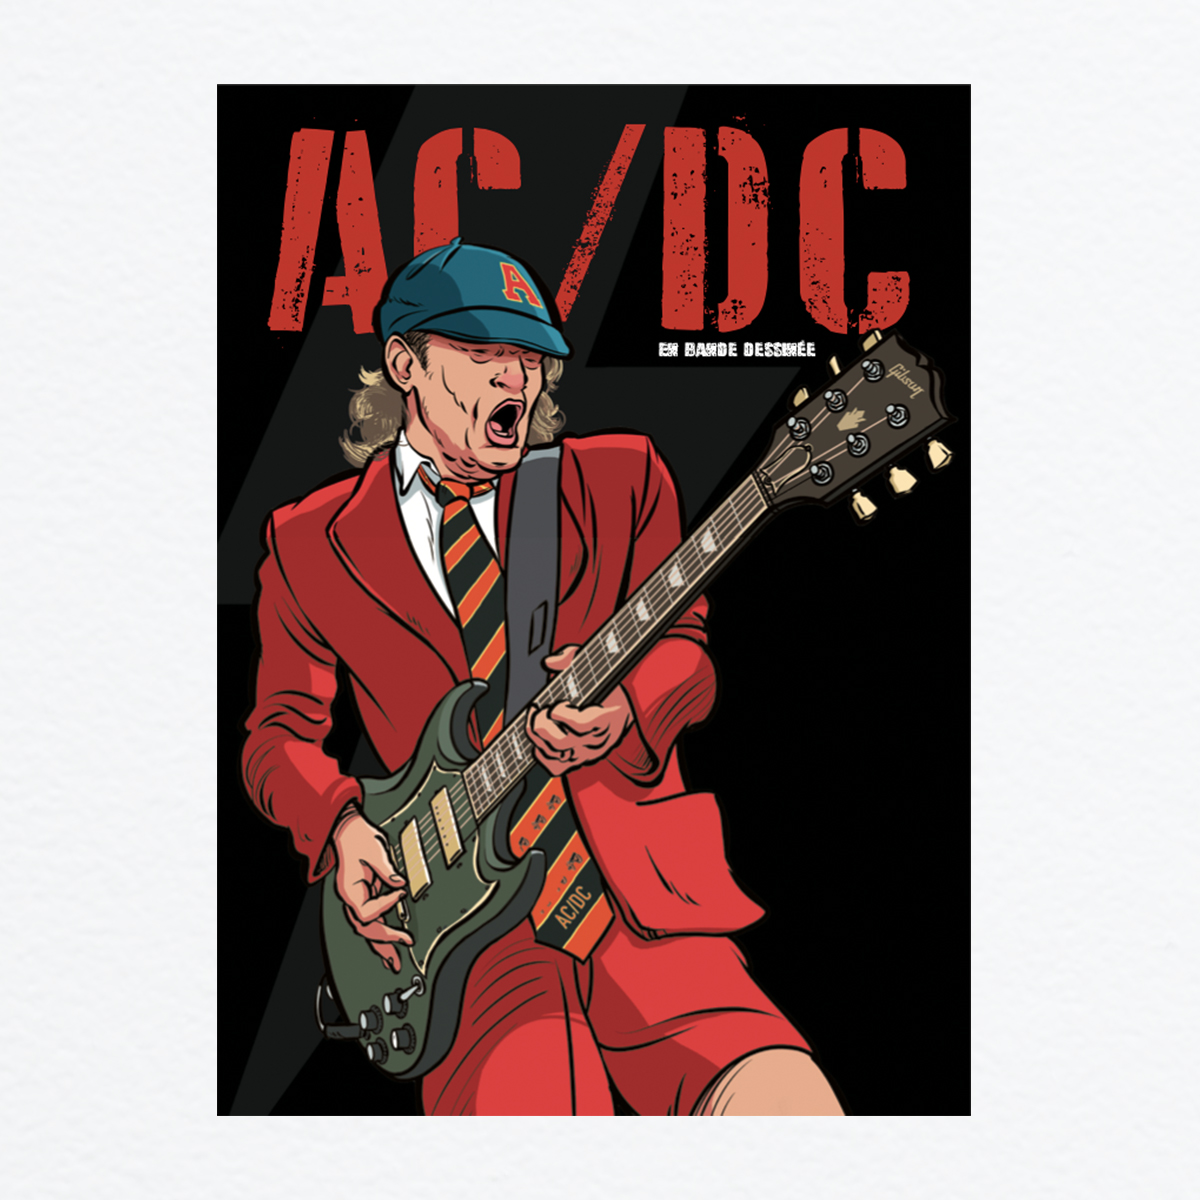 Une bande dessinée ACDC est disponible ... Acdc-g10